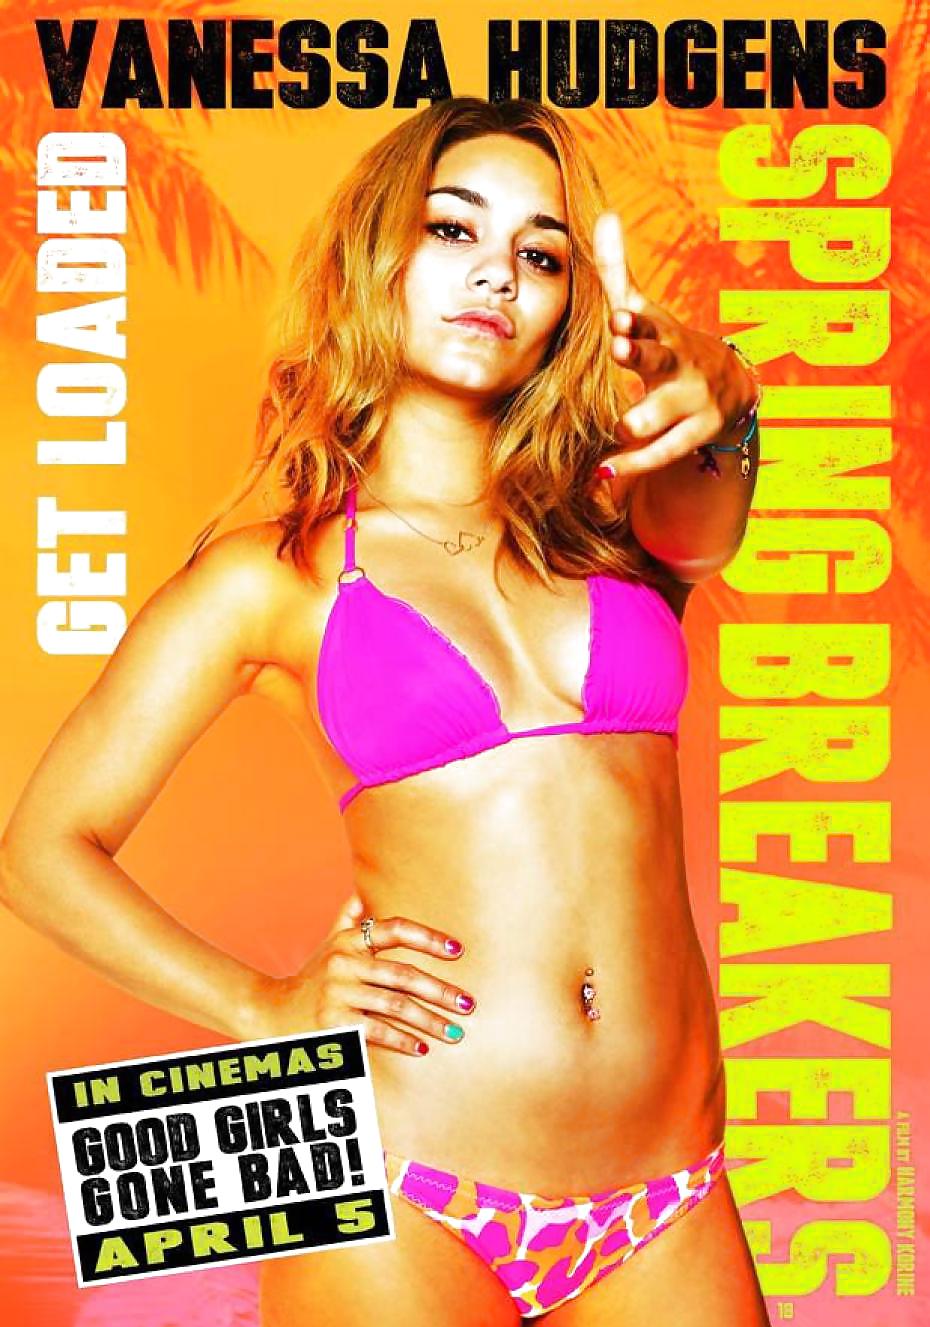 Spring Breakers - movie posters #17391020